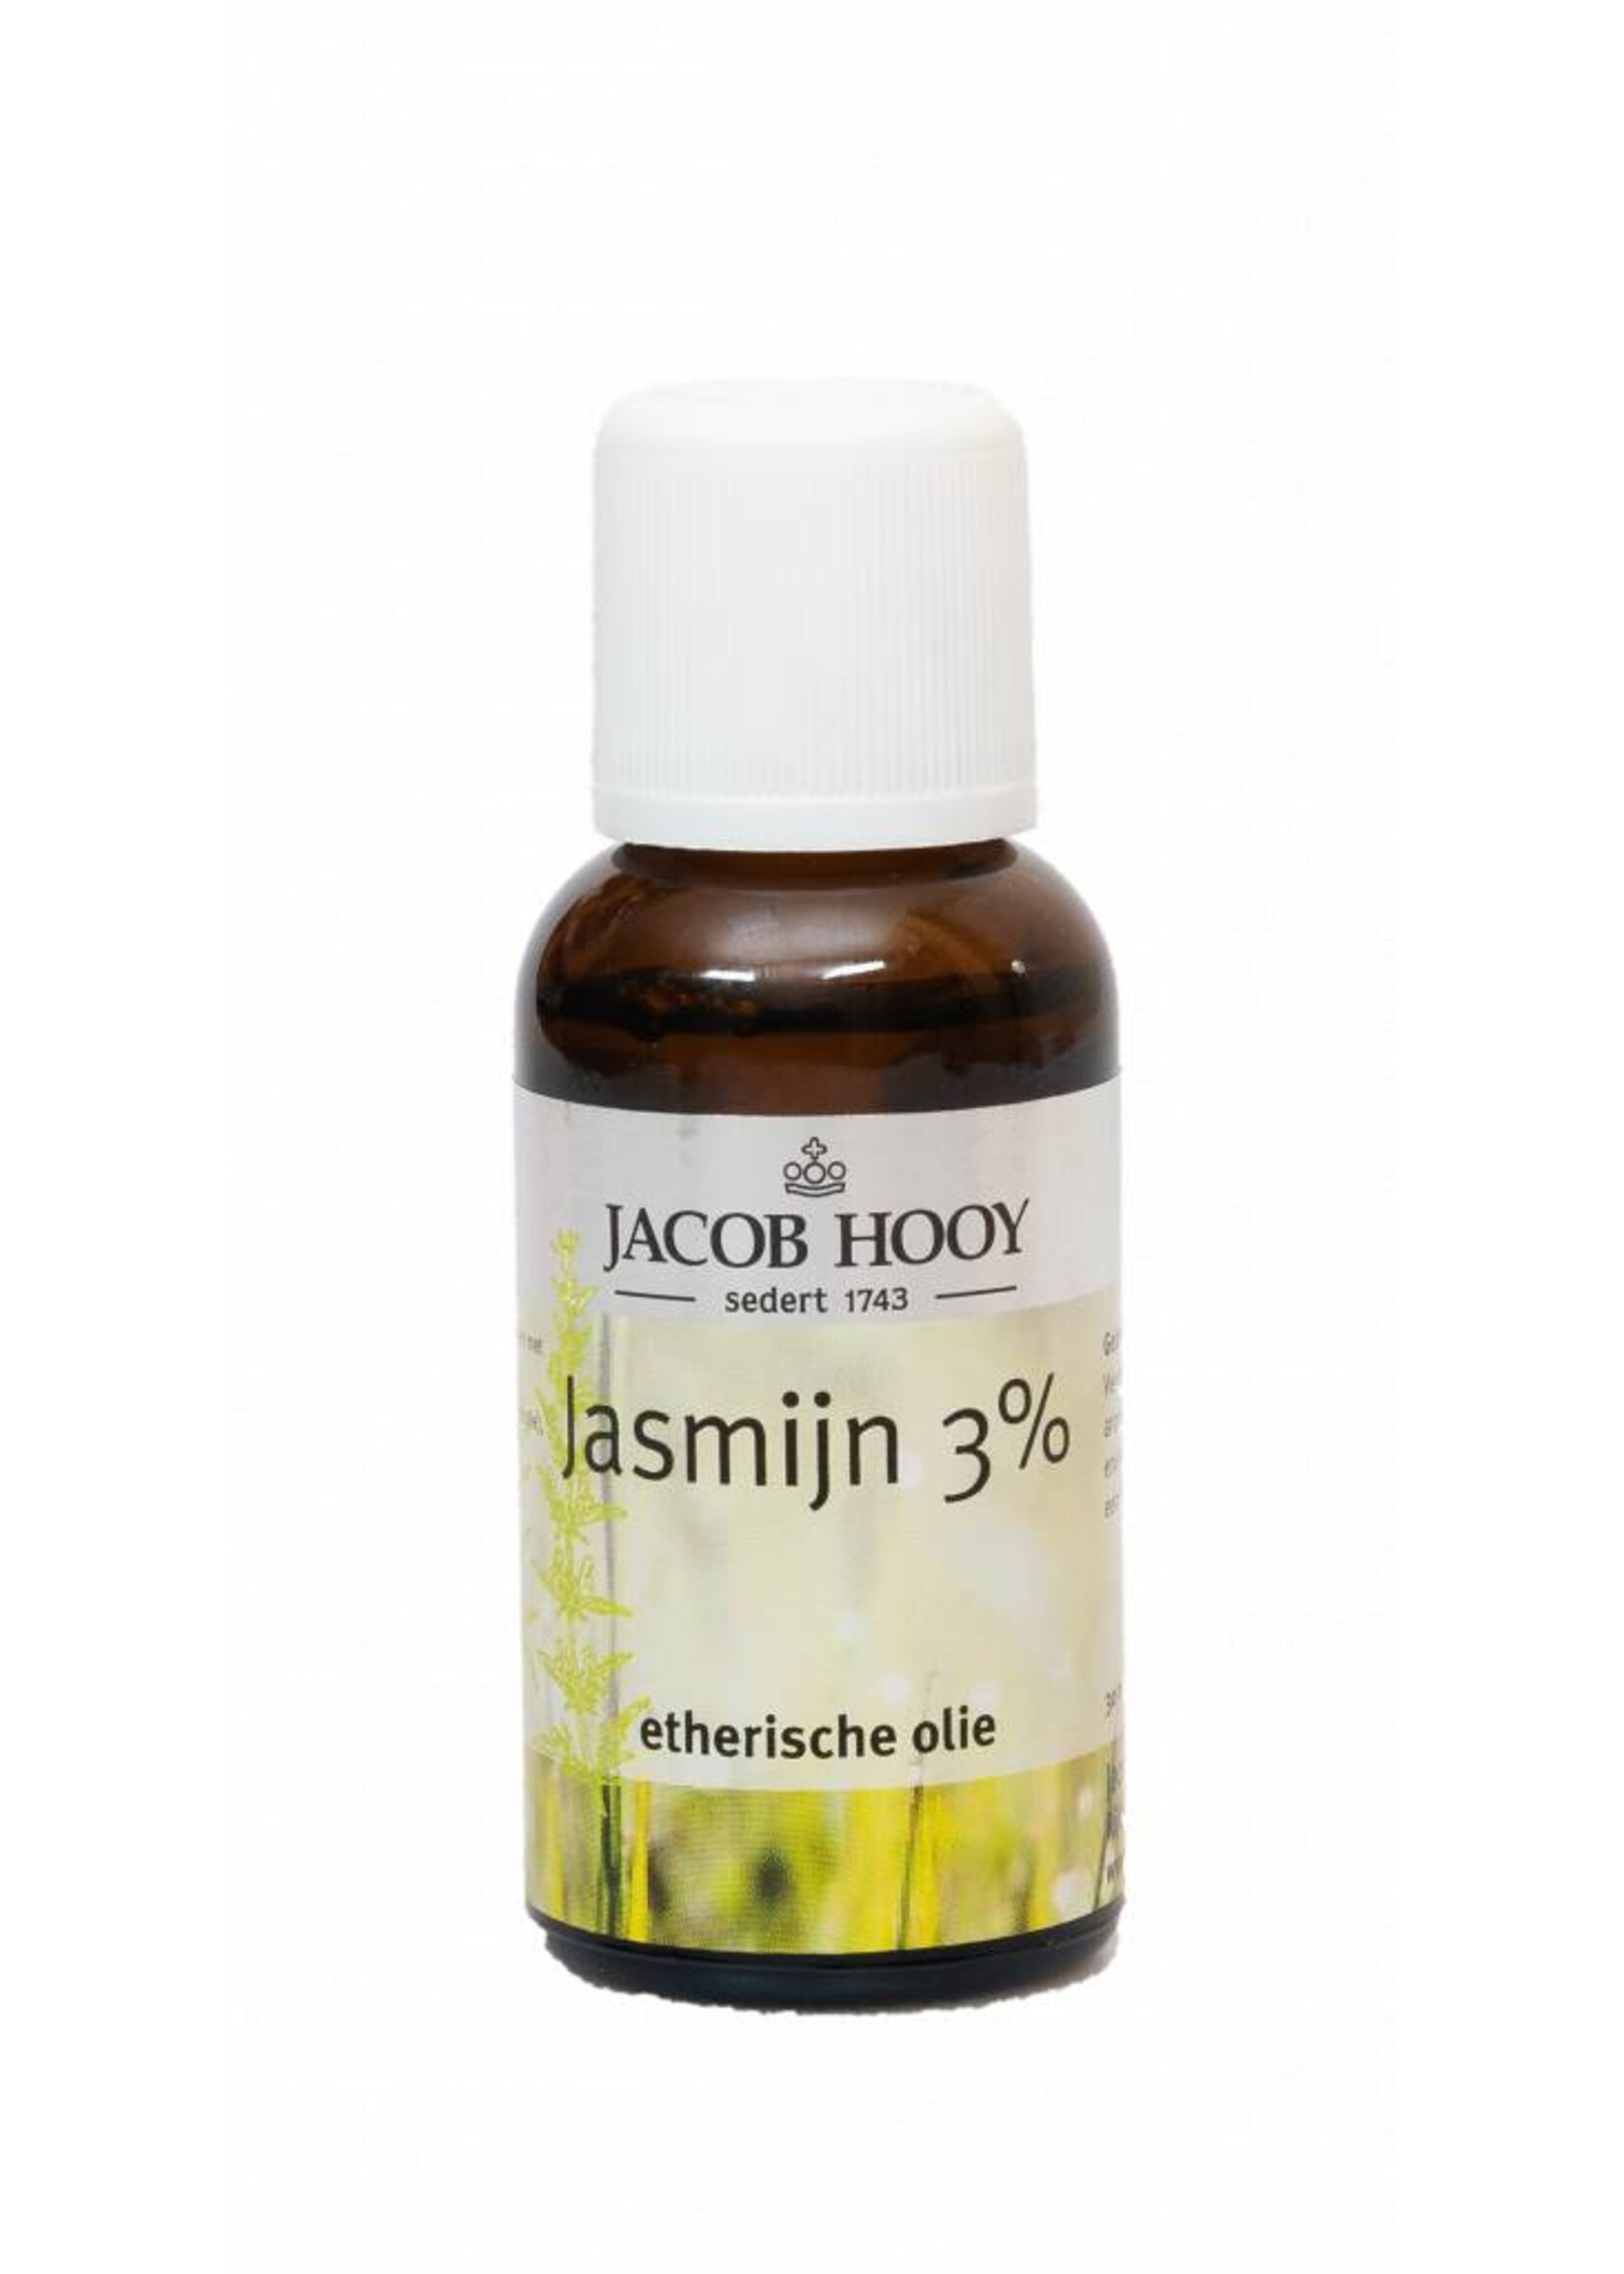 Jacob Hooy Huile essentielle Jasmin 3%, 30 ml